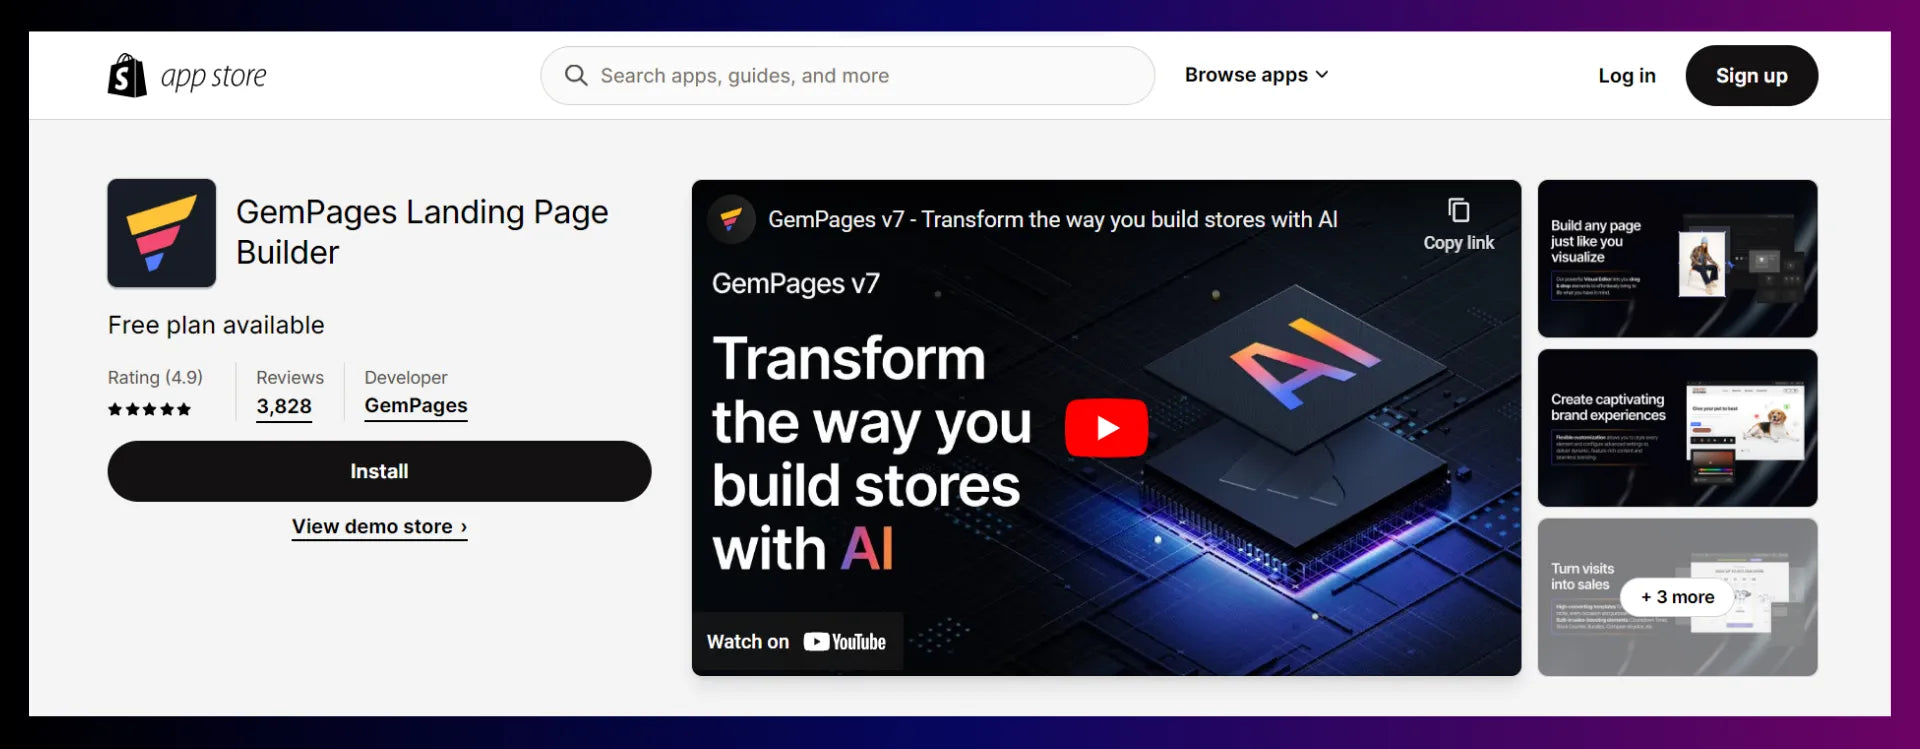 GemPages Landing Page Builder App